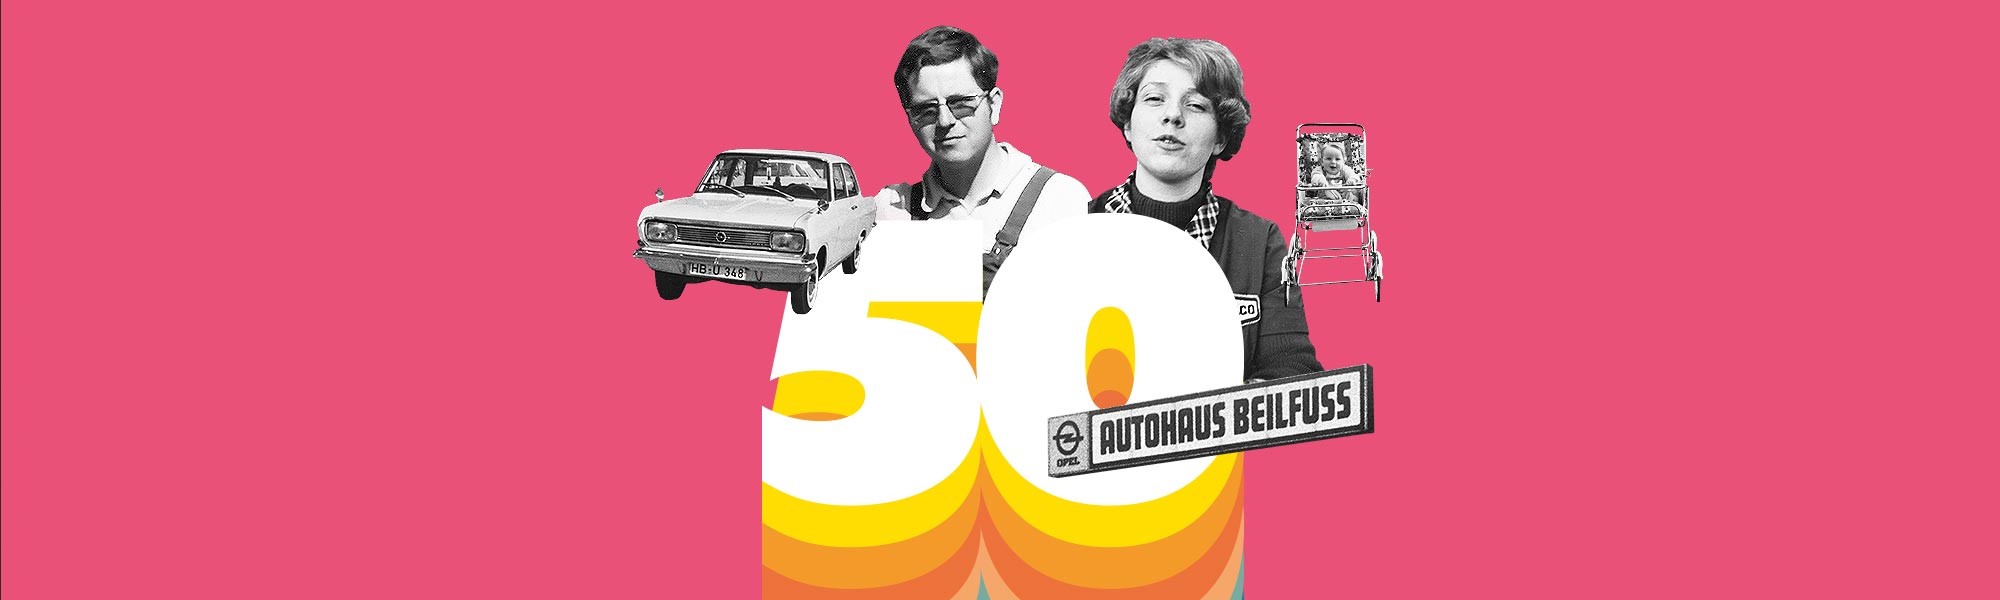 50 Jahre Autohaus Beilfuss